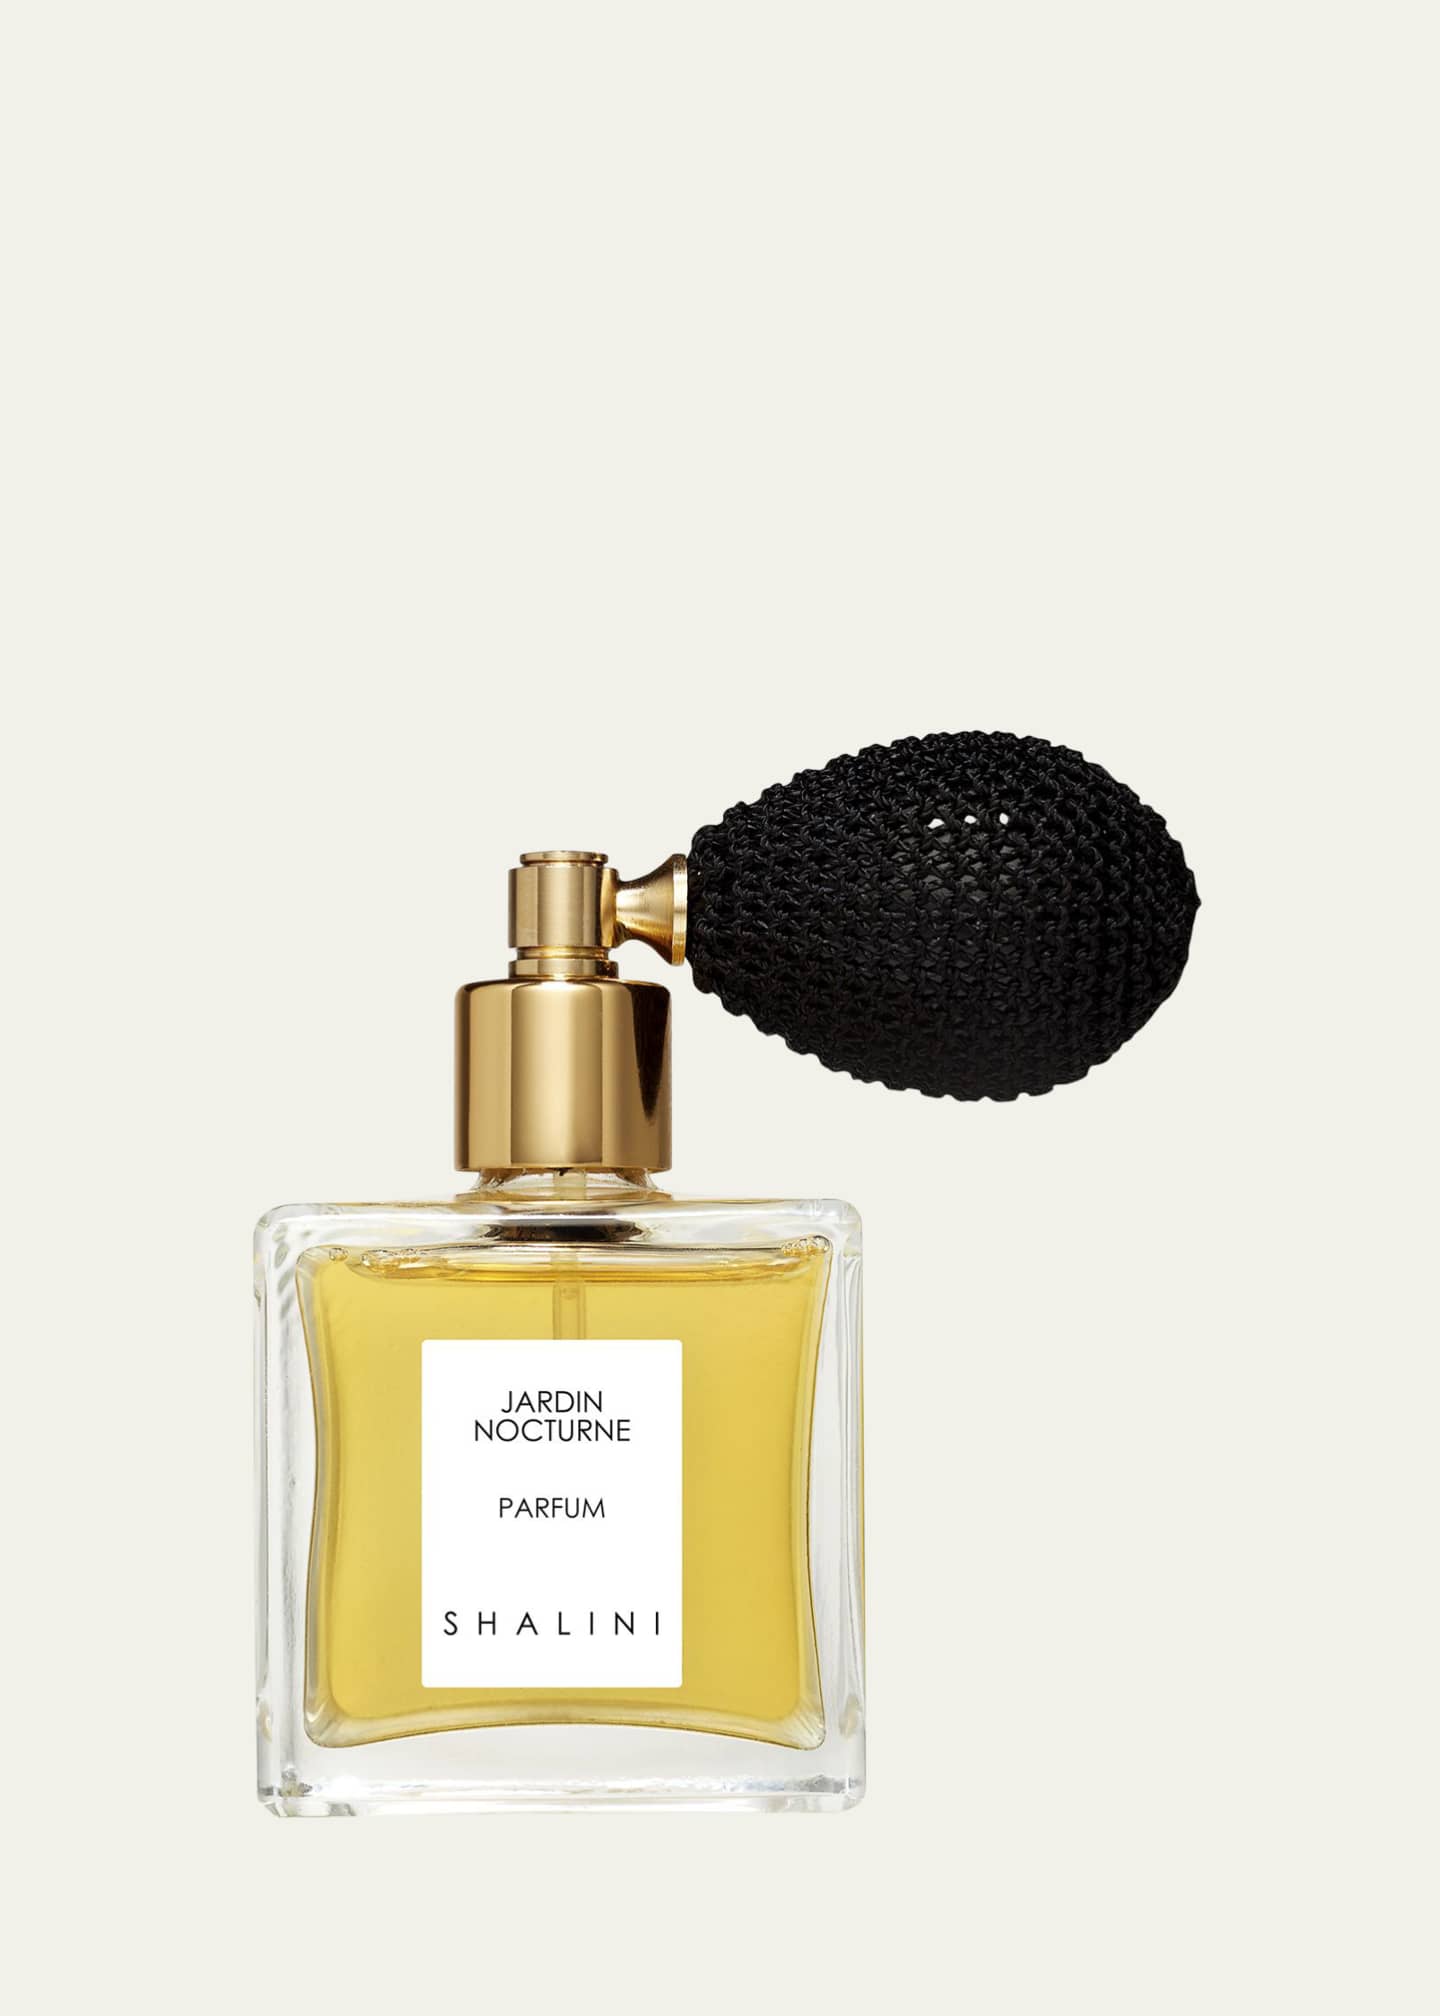 Shalini Parfum Jardin Nocturne Cubique Glass Bottle with Black Bulb Atomizer, 1.7 oz./ 50 mL